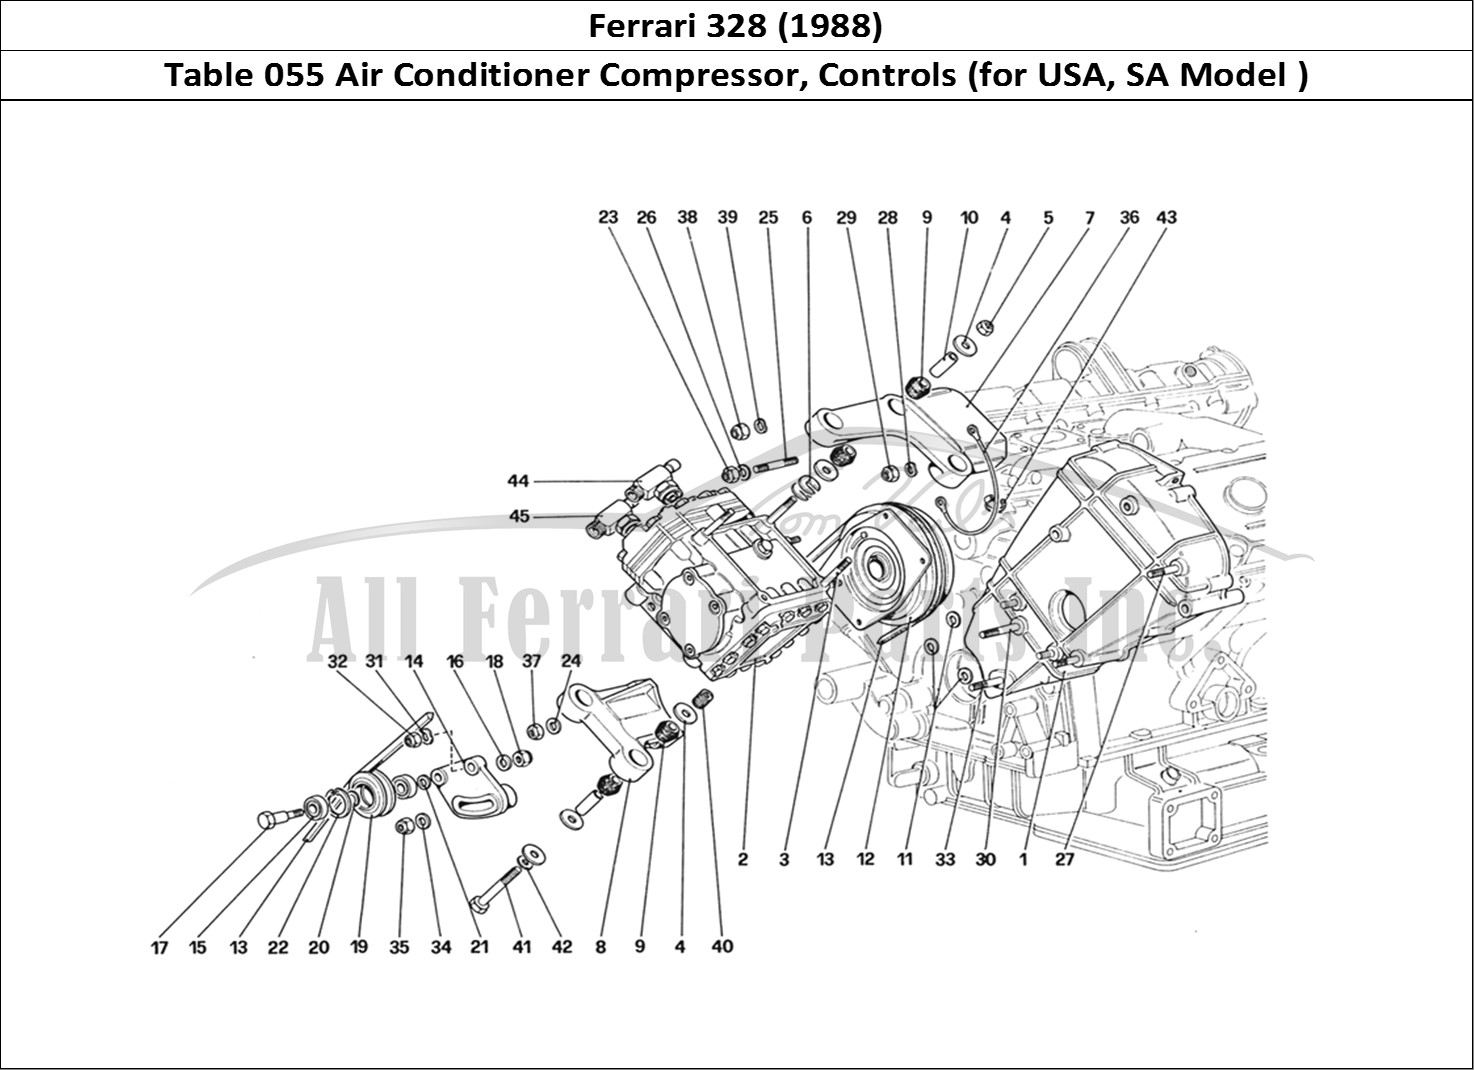 Ferrari Parts Ferrari 328 (1988) Page 055 Air Conditioning Compress